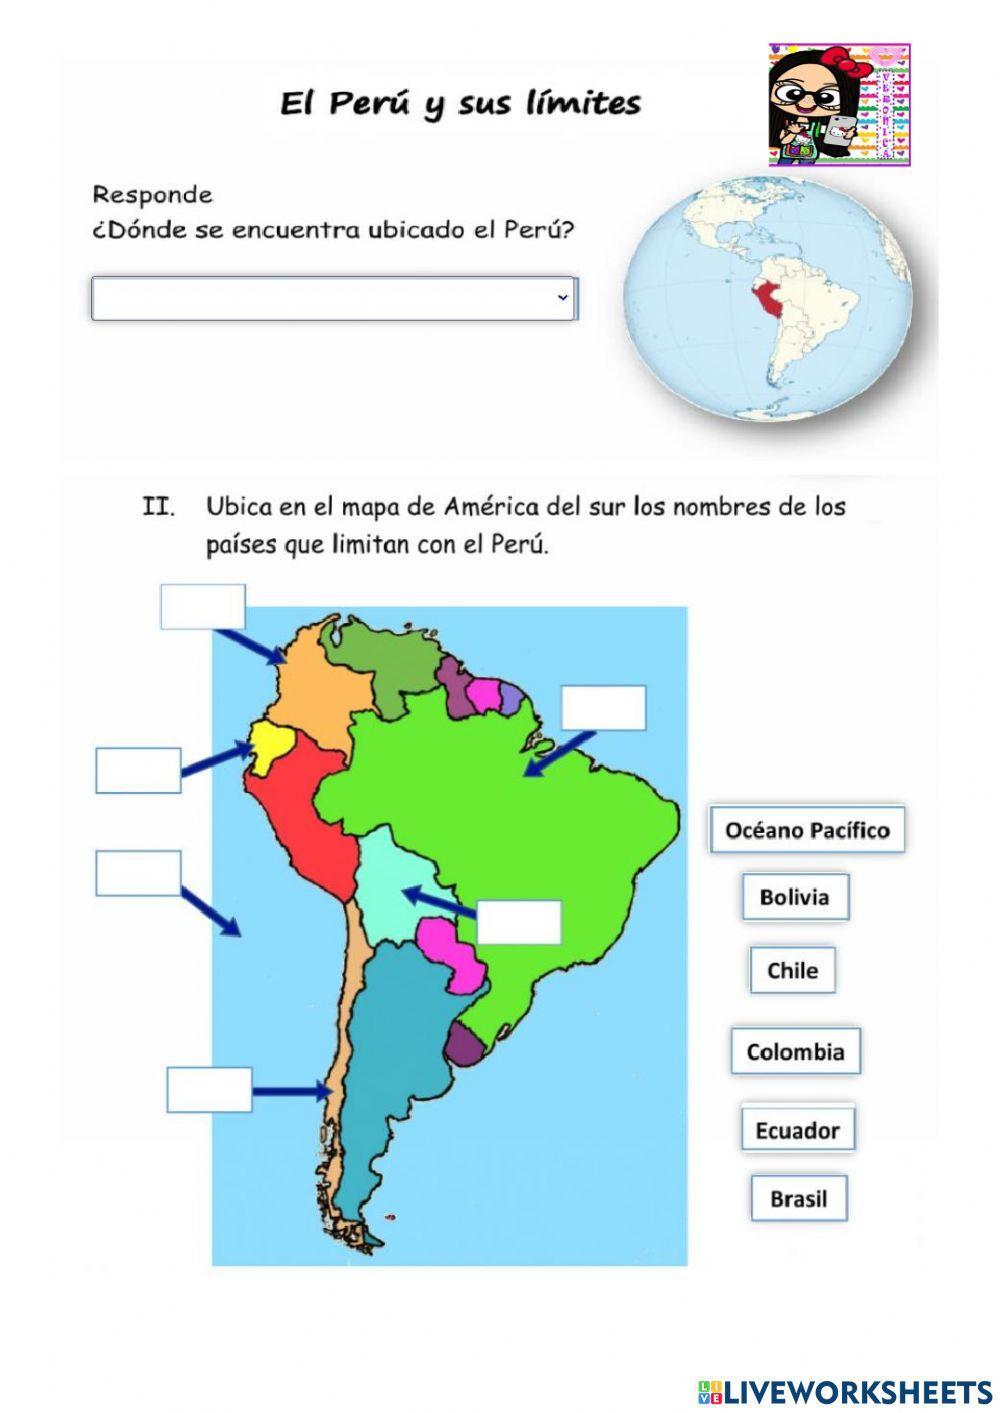 Division Politica del Peru